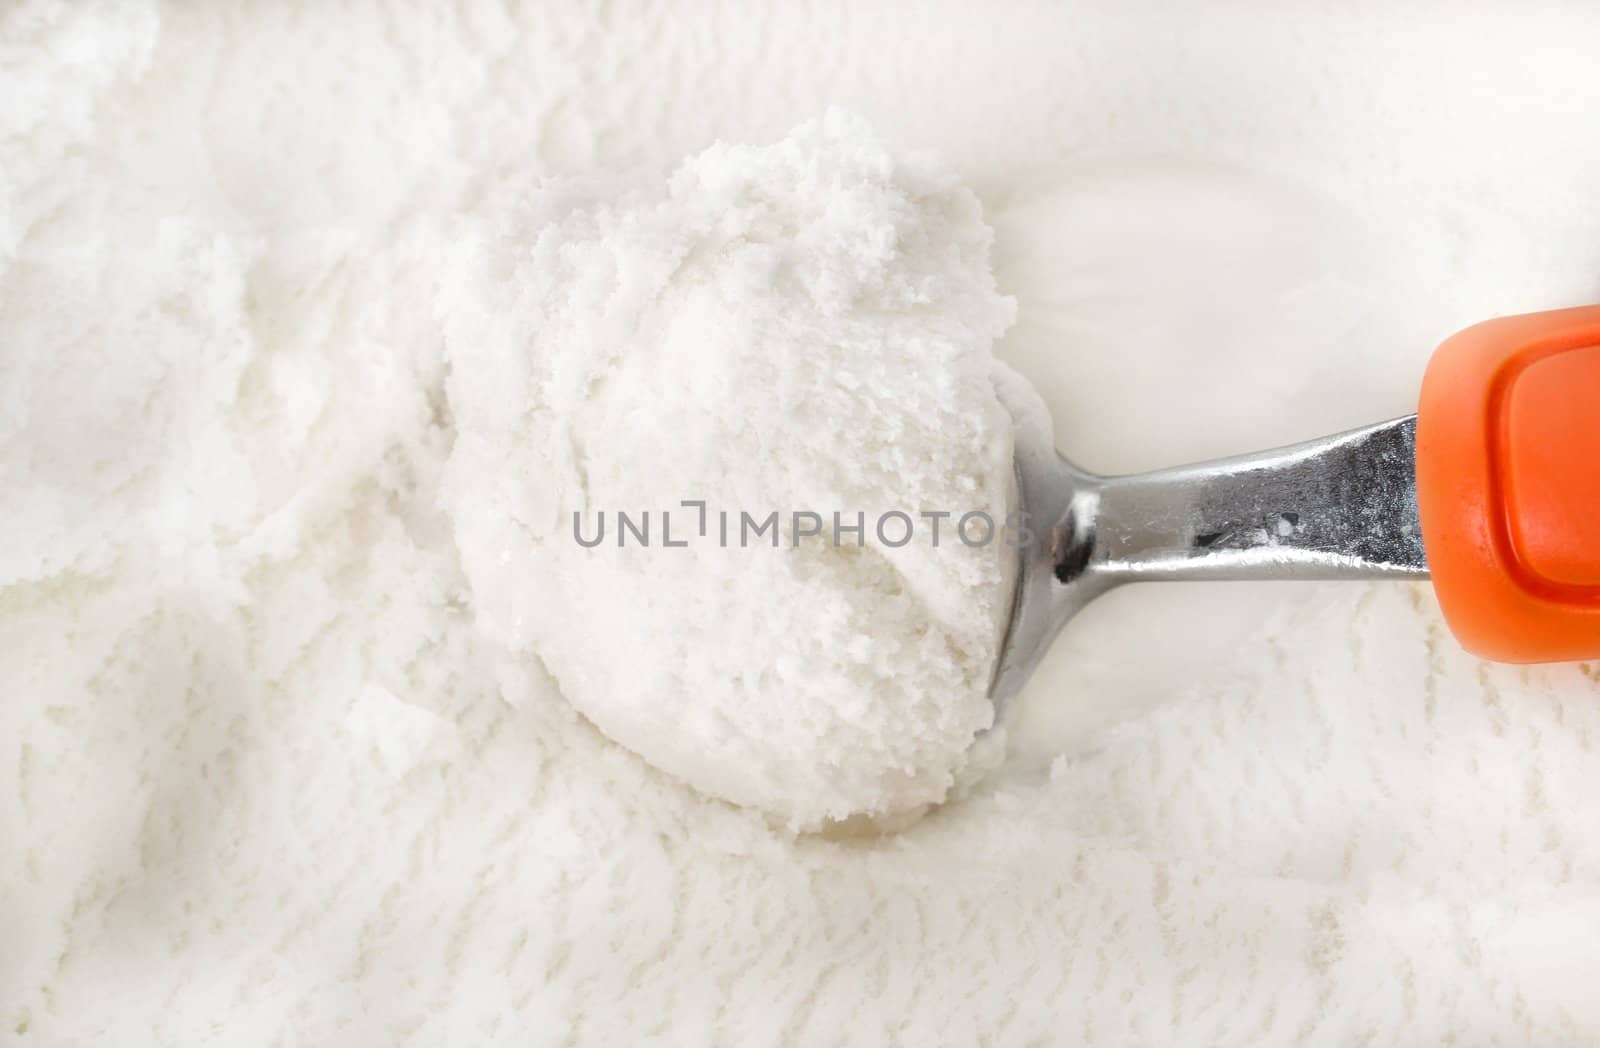 Vanillia Ice Cream by thephotoguy